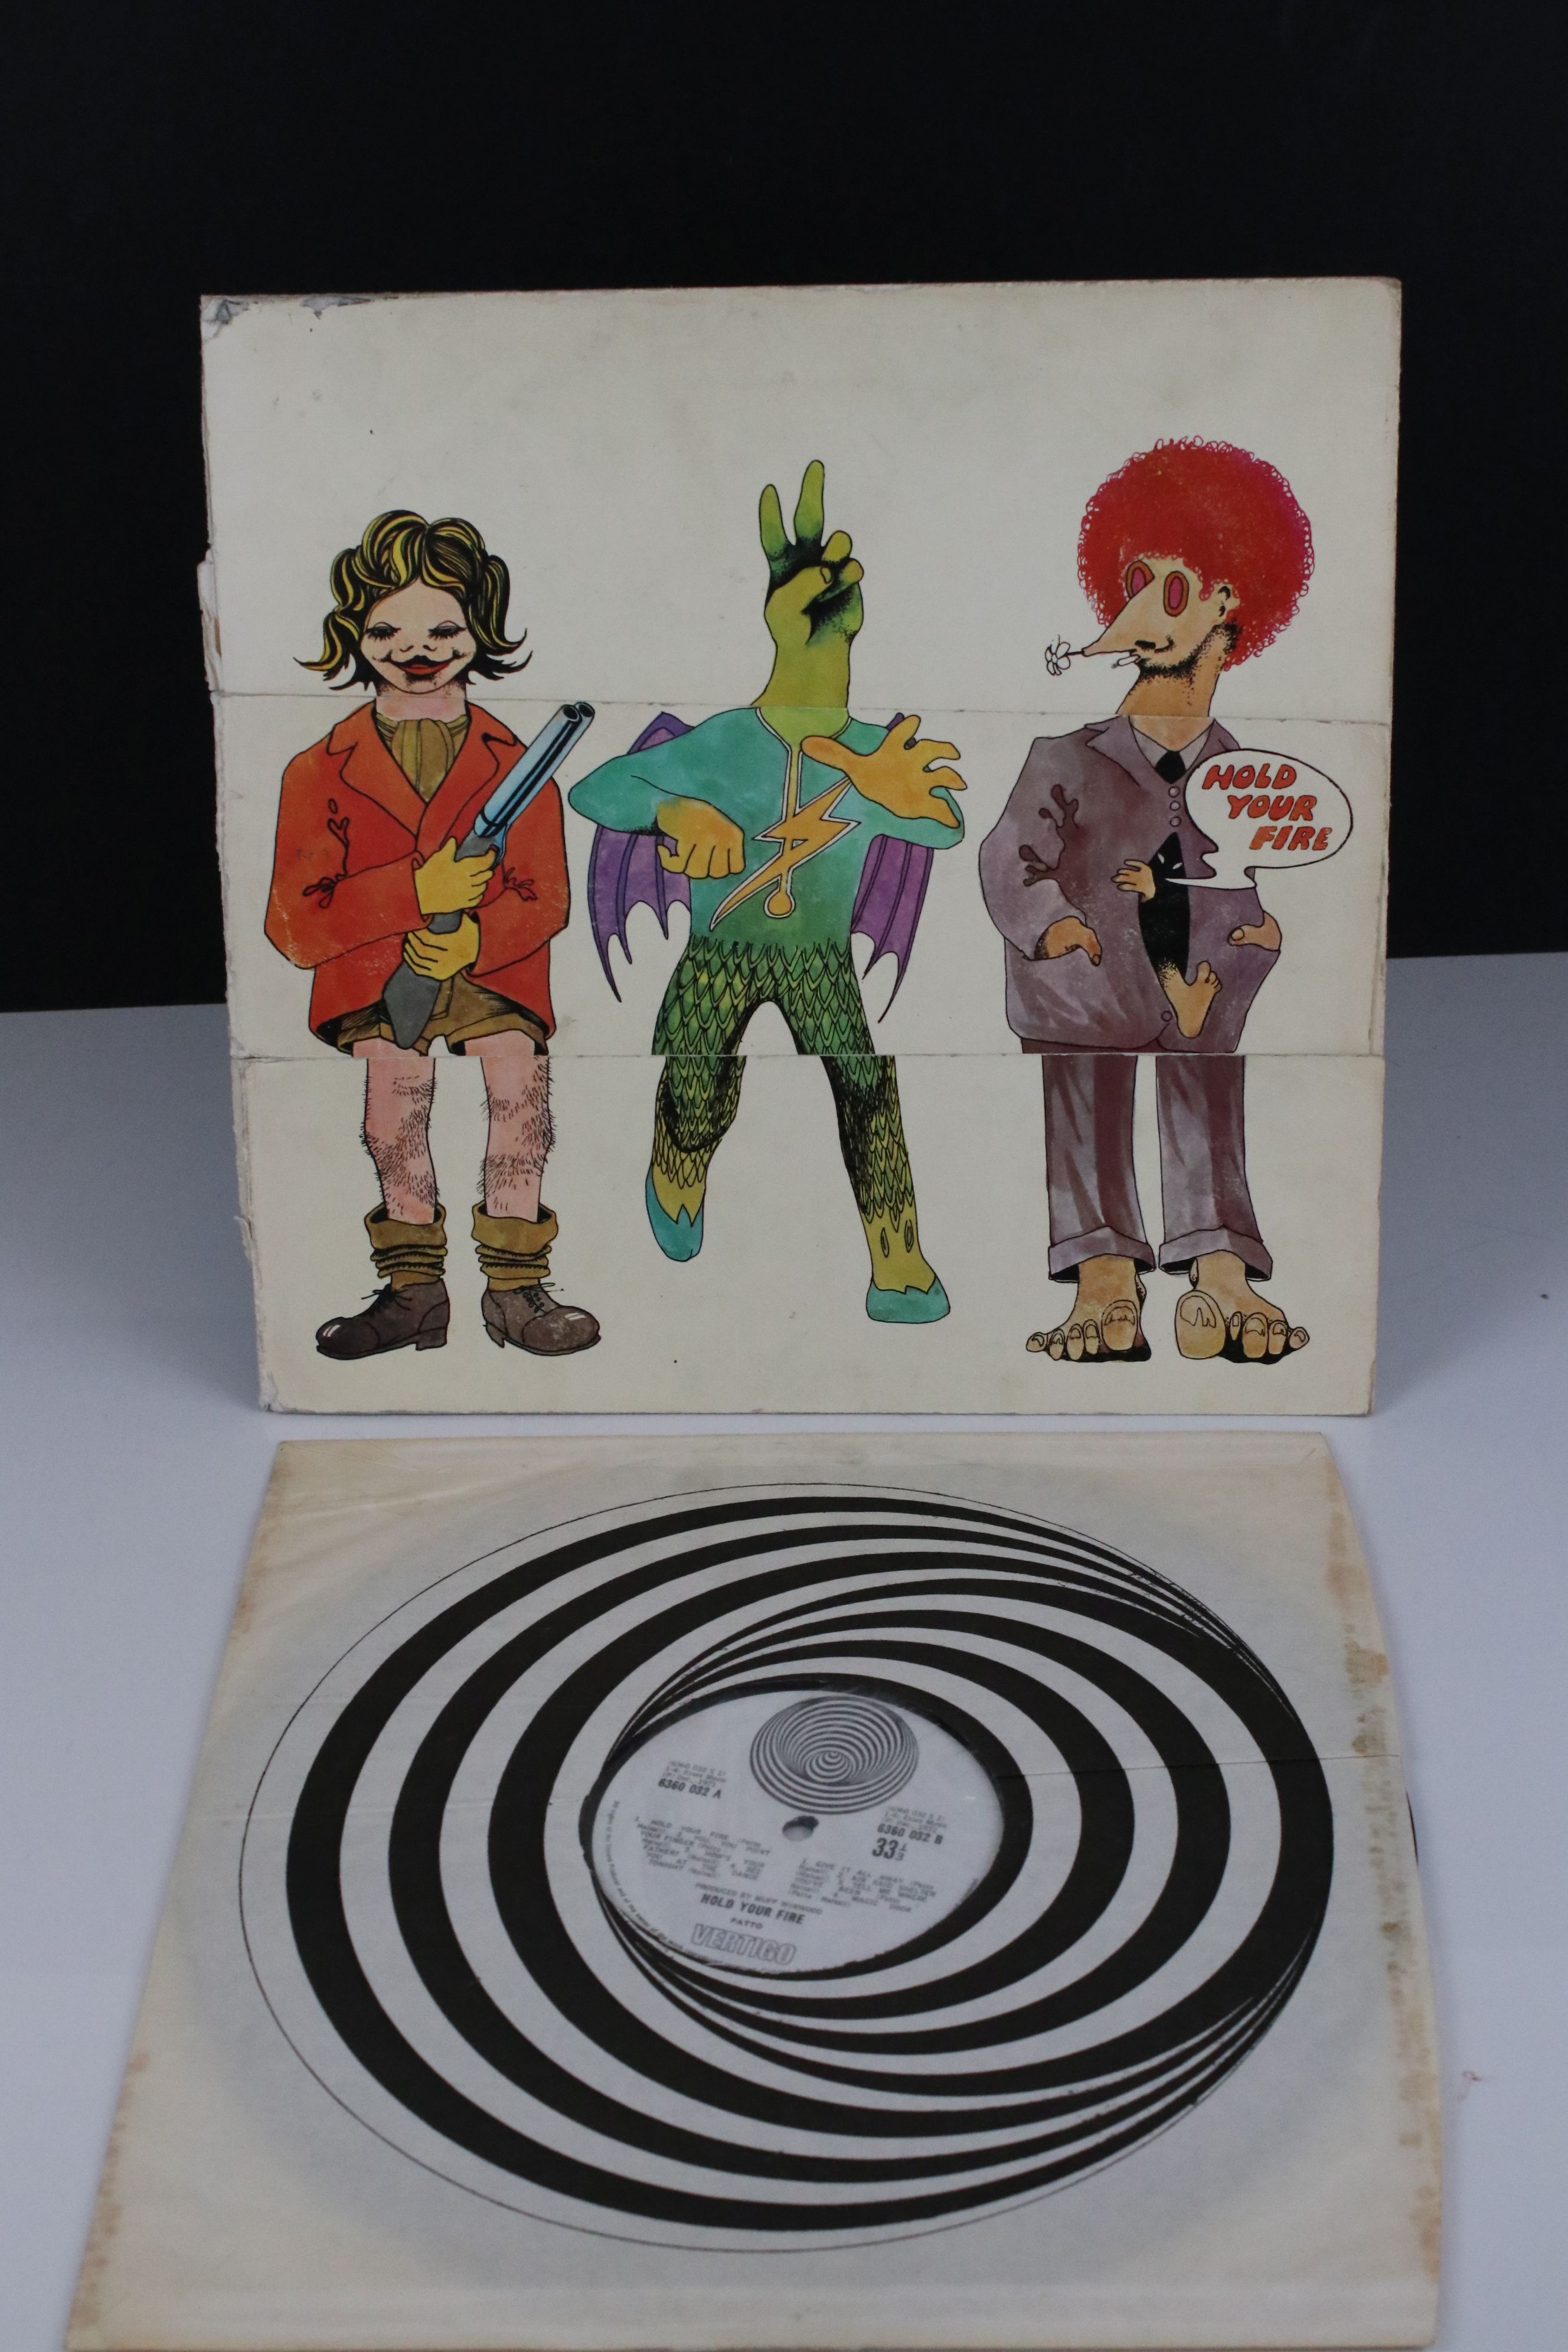 Vinyl - Patto Hold Your Fire LP on Vertigo 6360032, large Vertigo swirl label with Vertigo shown